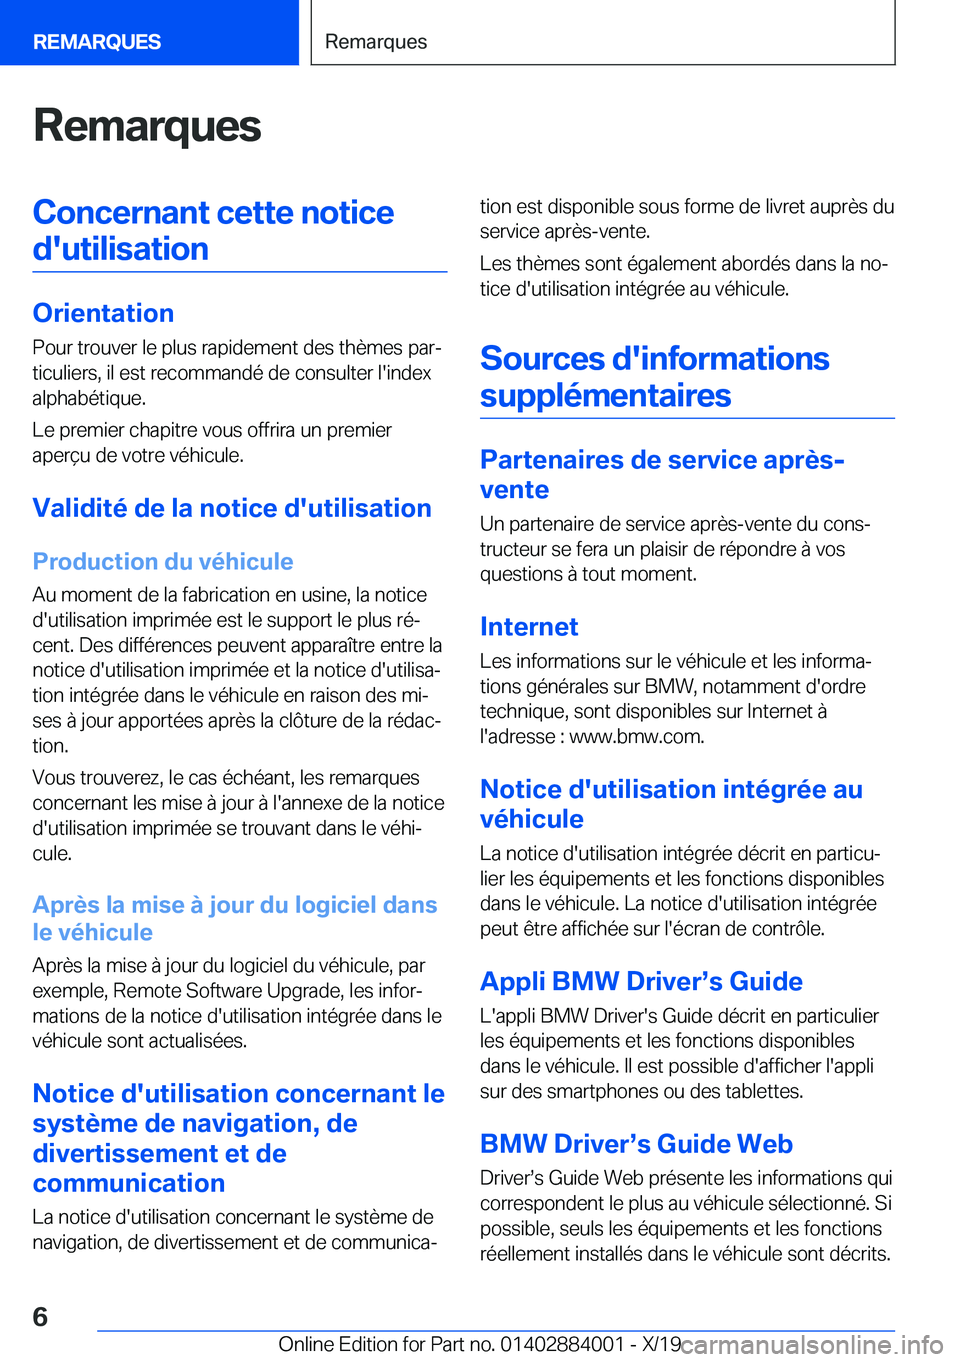 BMW X7 2020  Notices Demploi (in French) �R�e�m�a�r�q�u�e�s�C�o�n�c�e�r�n�a�n�t��c�e�t�t�e��n�o�t�i�c�e�d�'�u�t�i�l�i�s�a�t�i�o�n
�O�r�i�e�n�t�a�t�i�o�n �P�o�u�r��t�r�o�u�v�e�r��l�e��p�l�u�s��r�a�p�i�d�e�m�e�n�t��d�e�s��t�h�è�m�